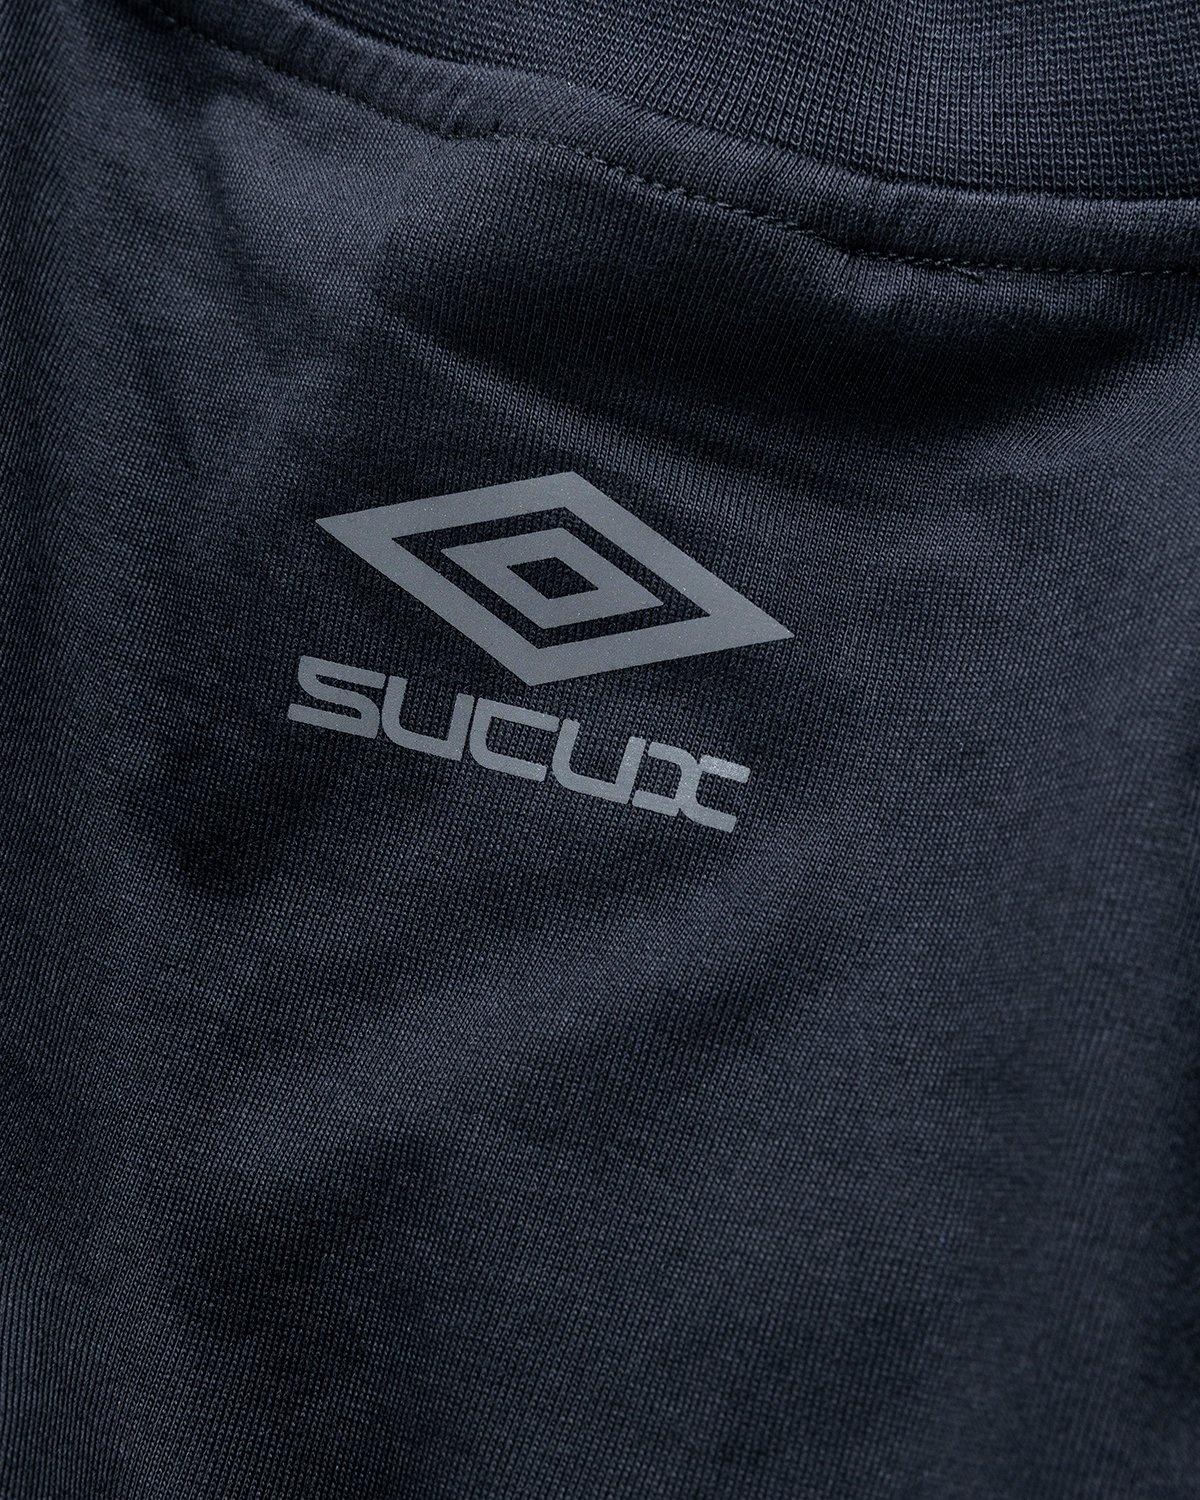 Umbro x Sucux – Oversize T-Shirt Black - T-Shirts - Black - Image 4